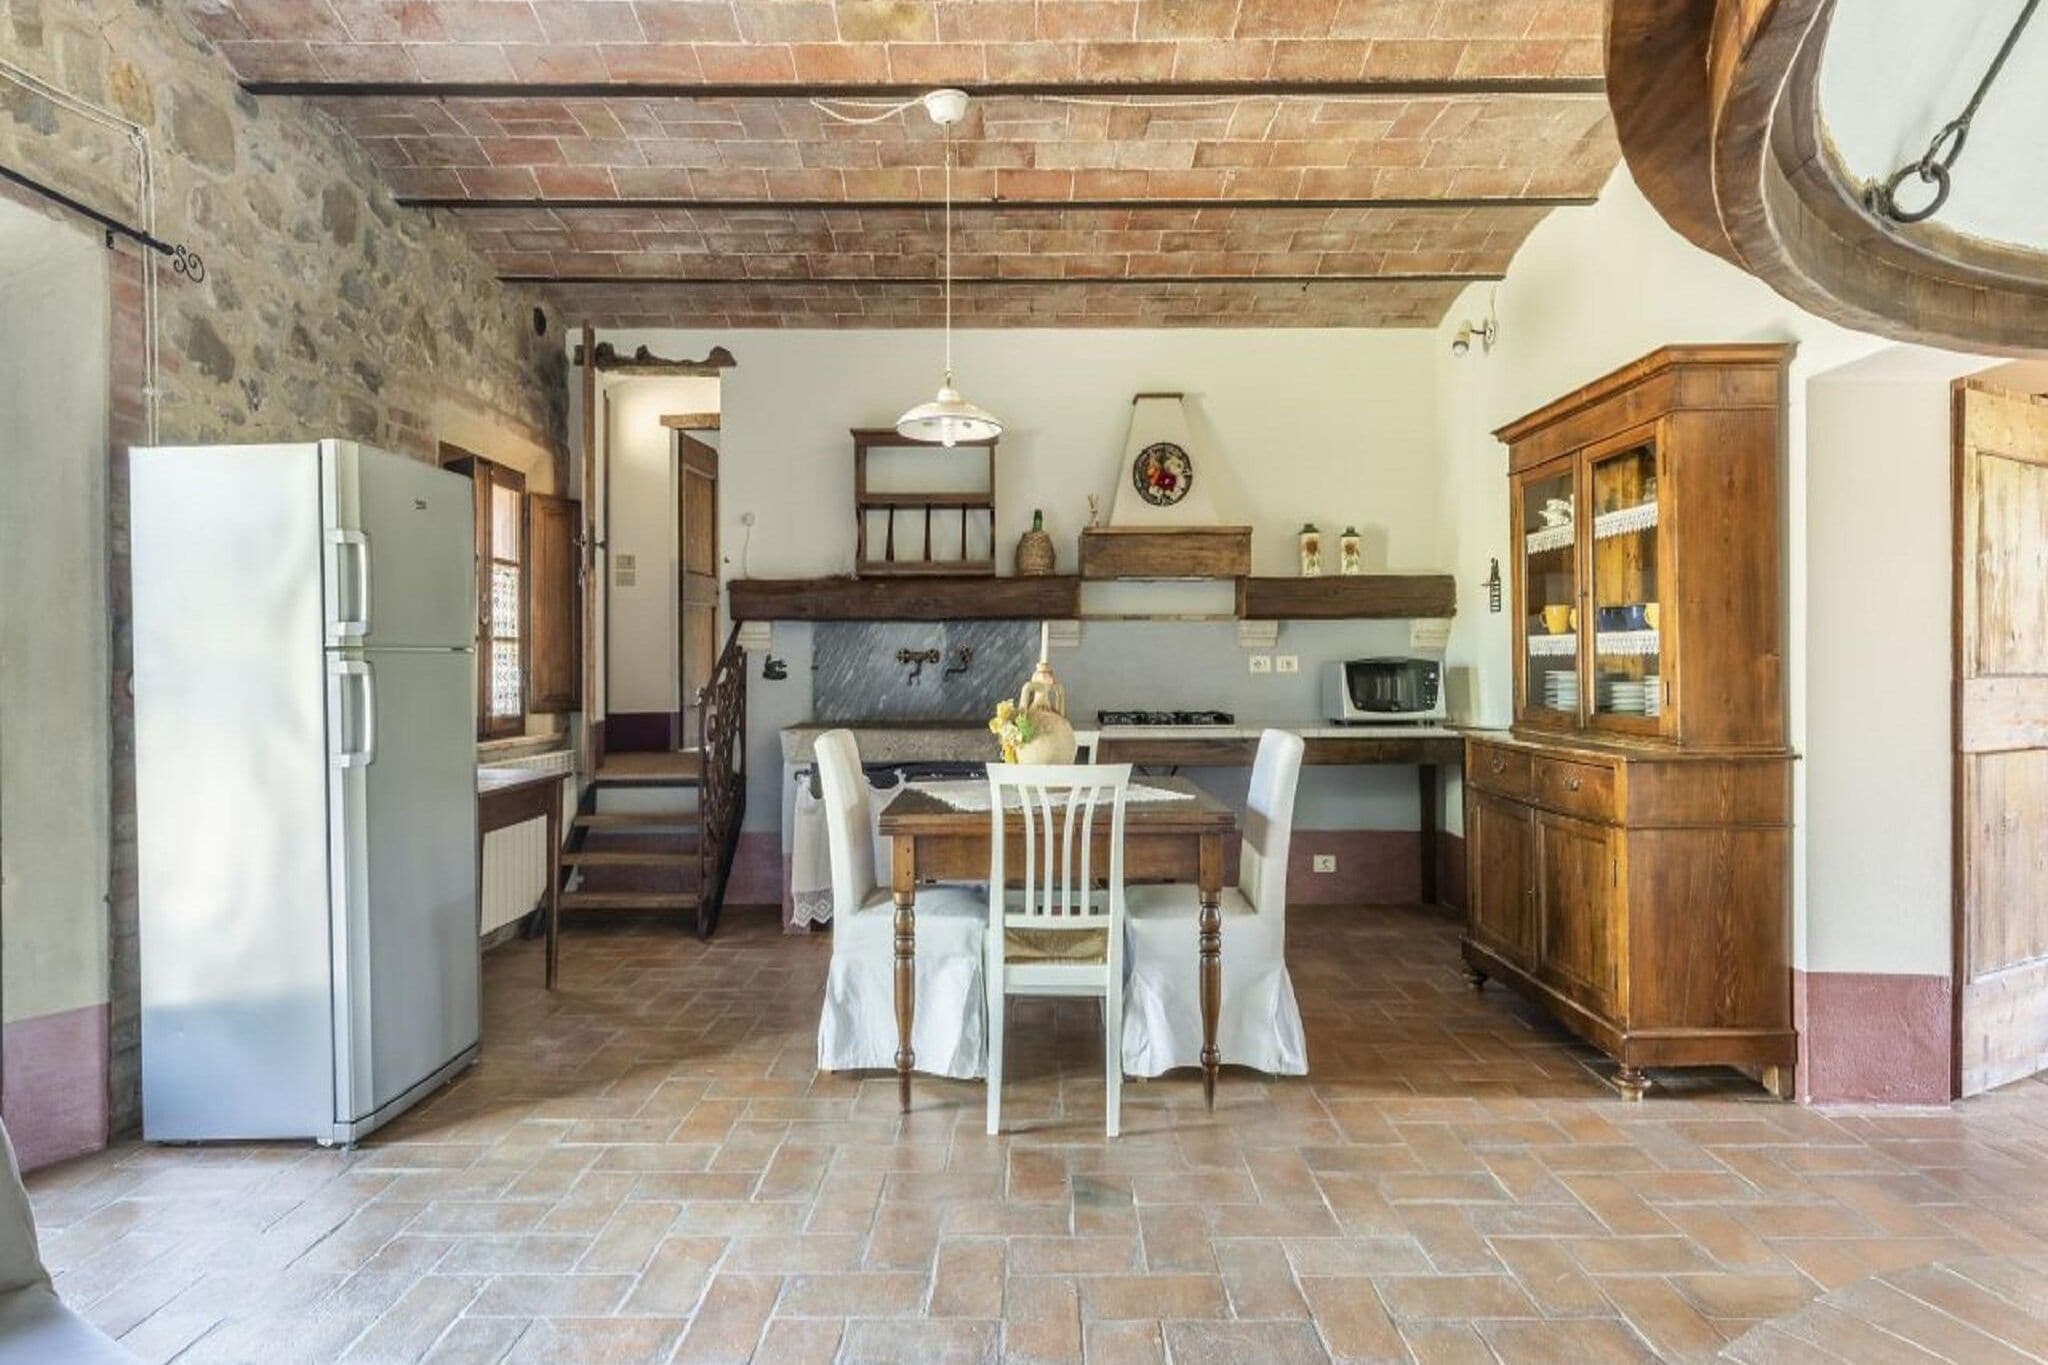 Cozy Villa in Castiglione D'orcia Italy with Private Pool